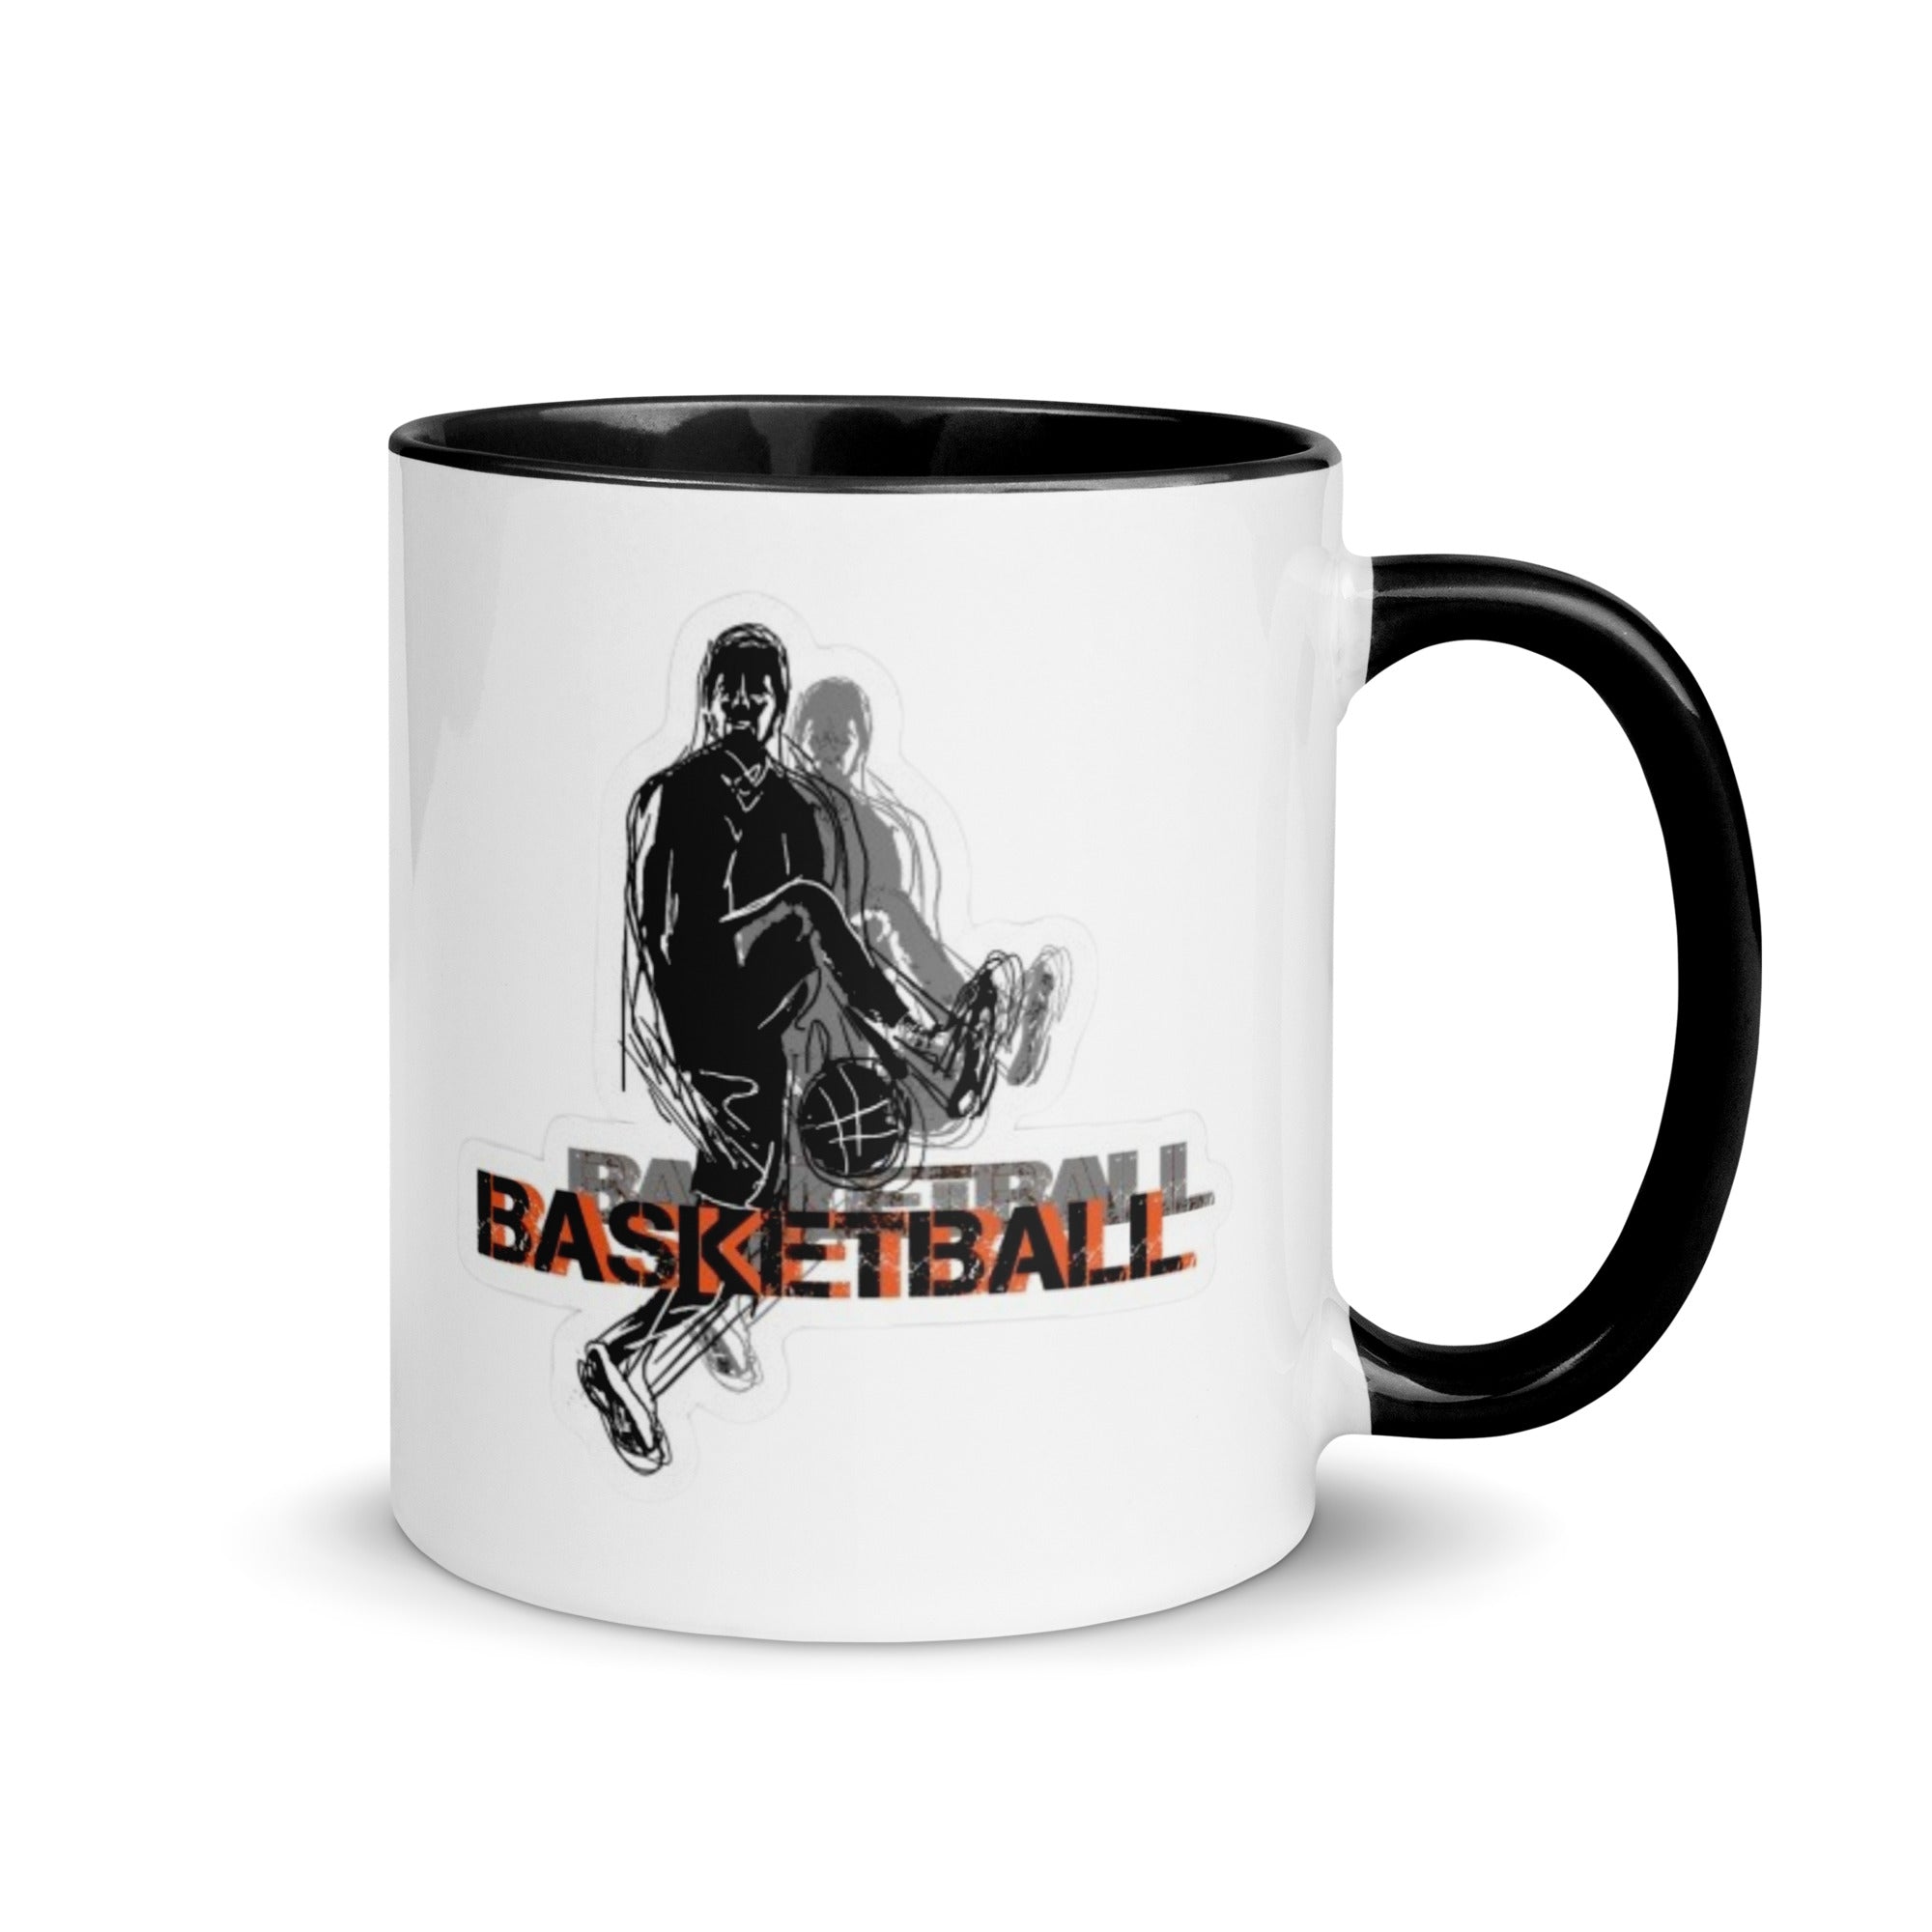 Basketball Mug with Color Inside